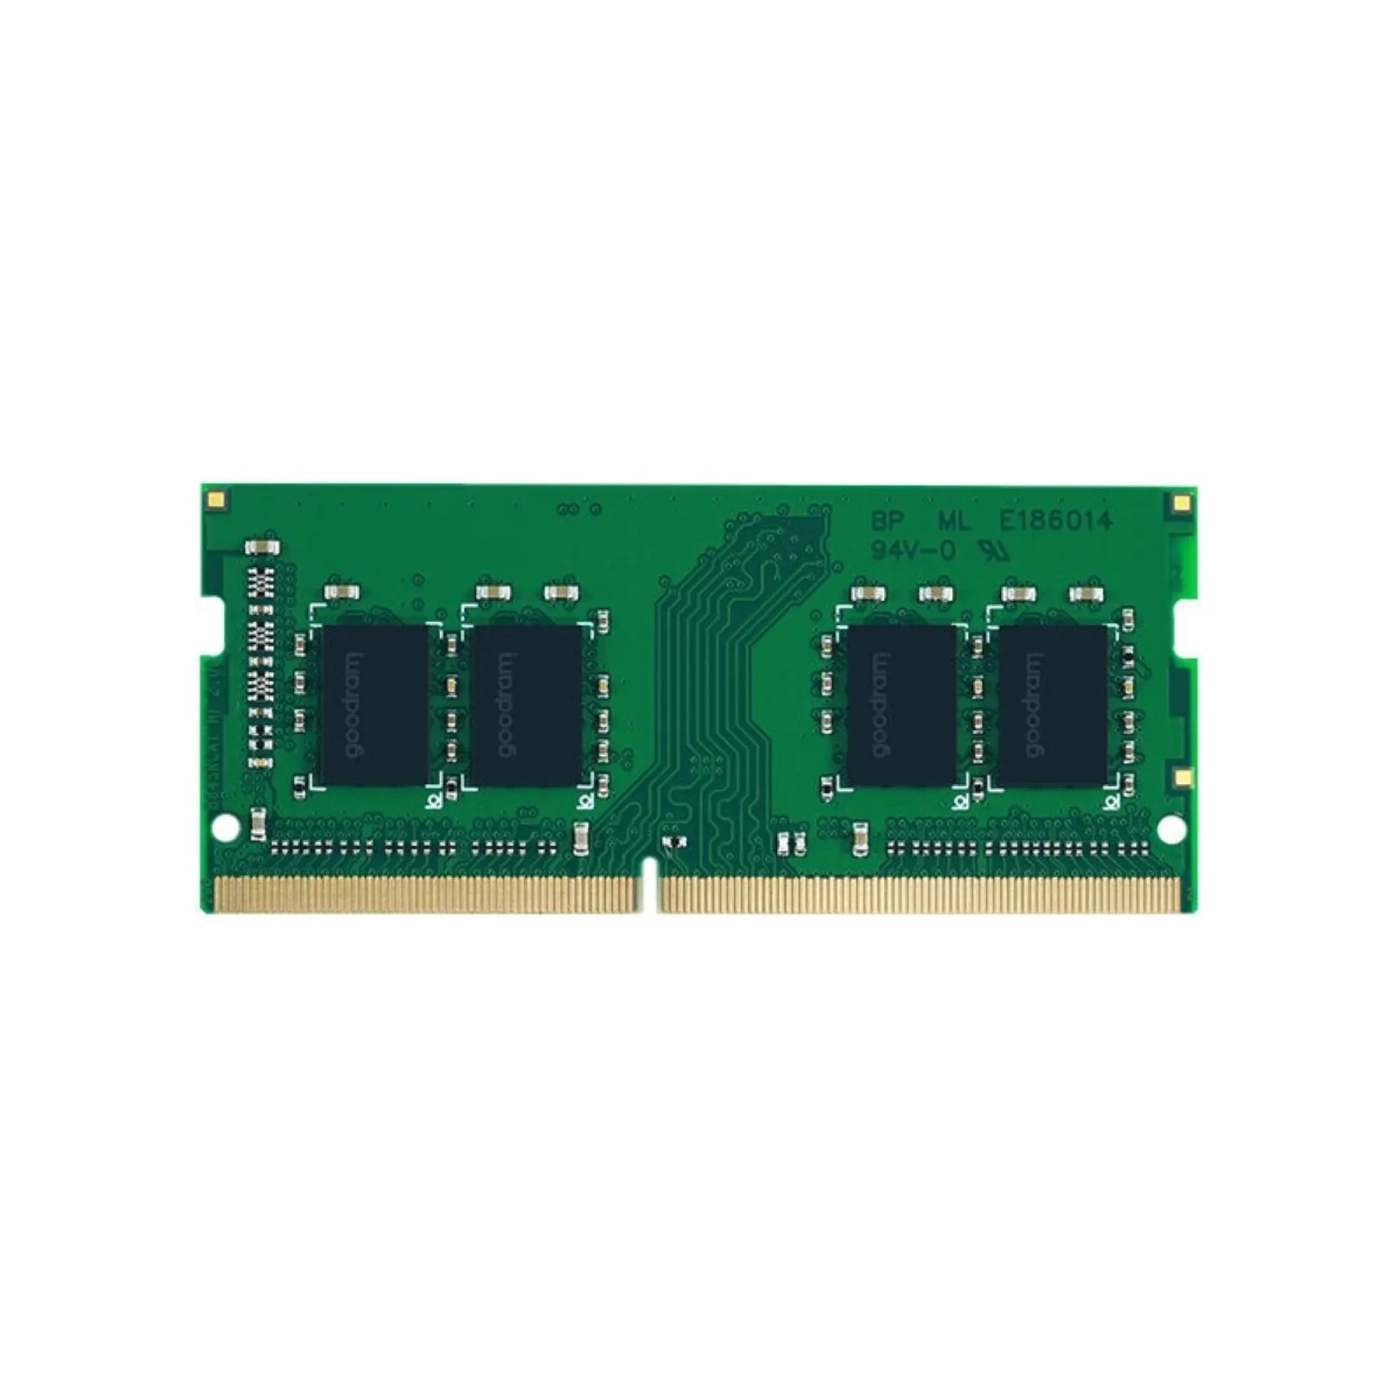 Купити Модуль пам'яті Goodram DDR4-2400 SODIMM 4GB (GR2400S464L17S/4G) - фото 1